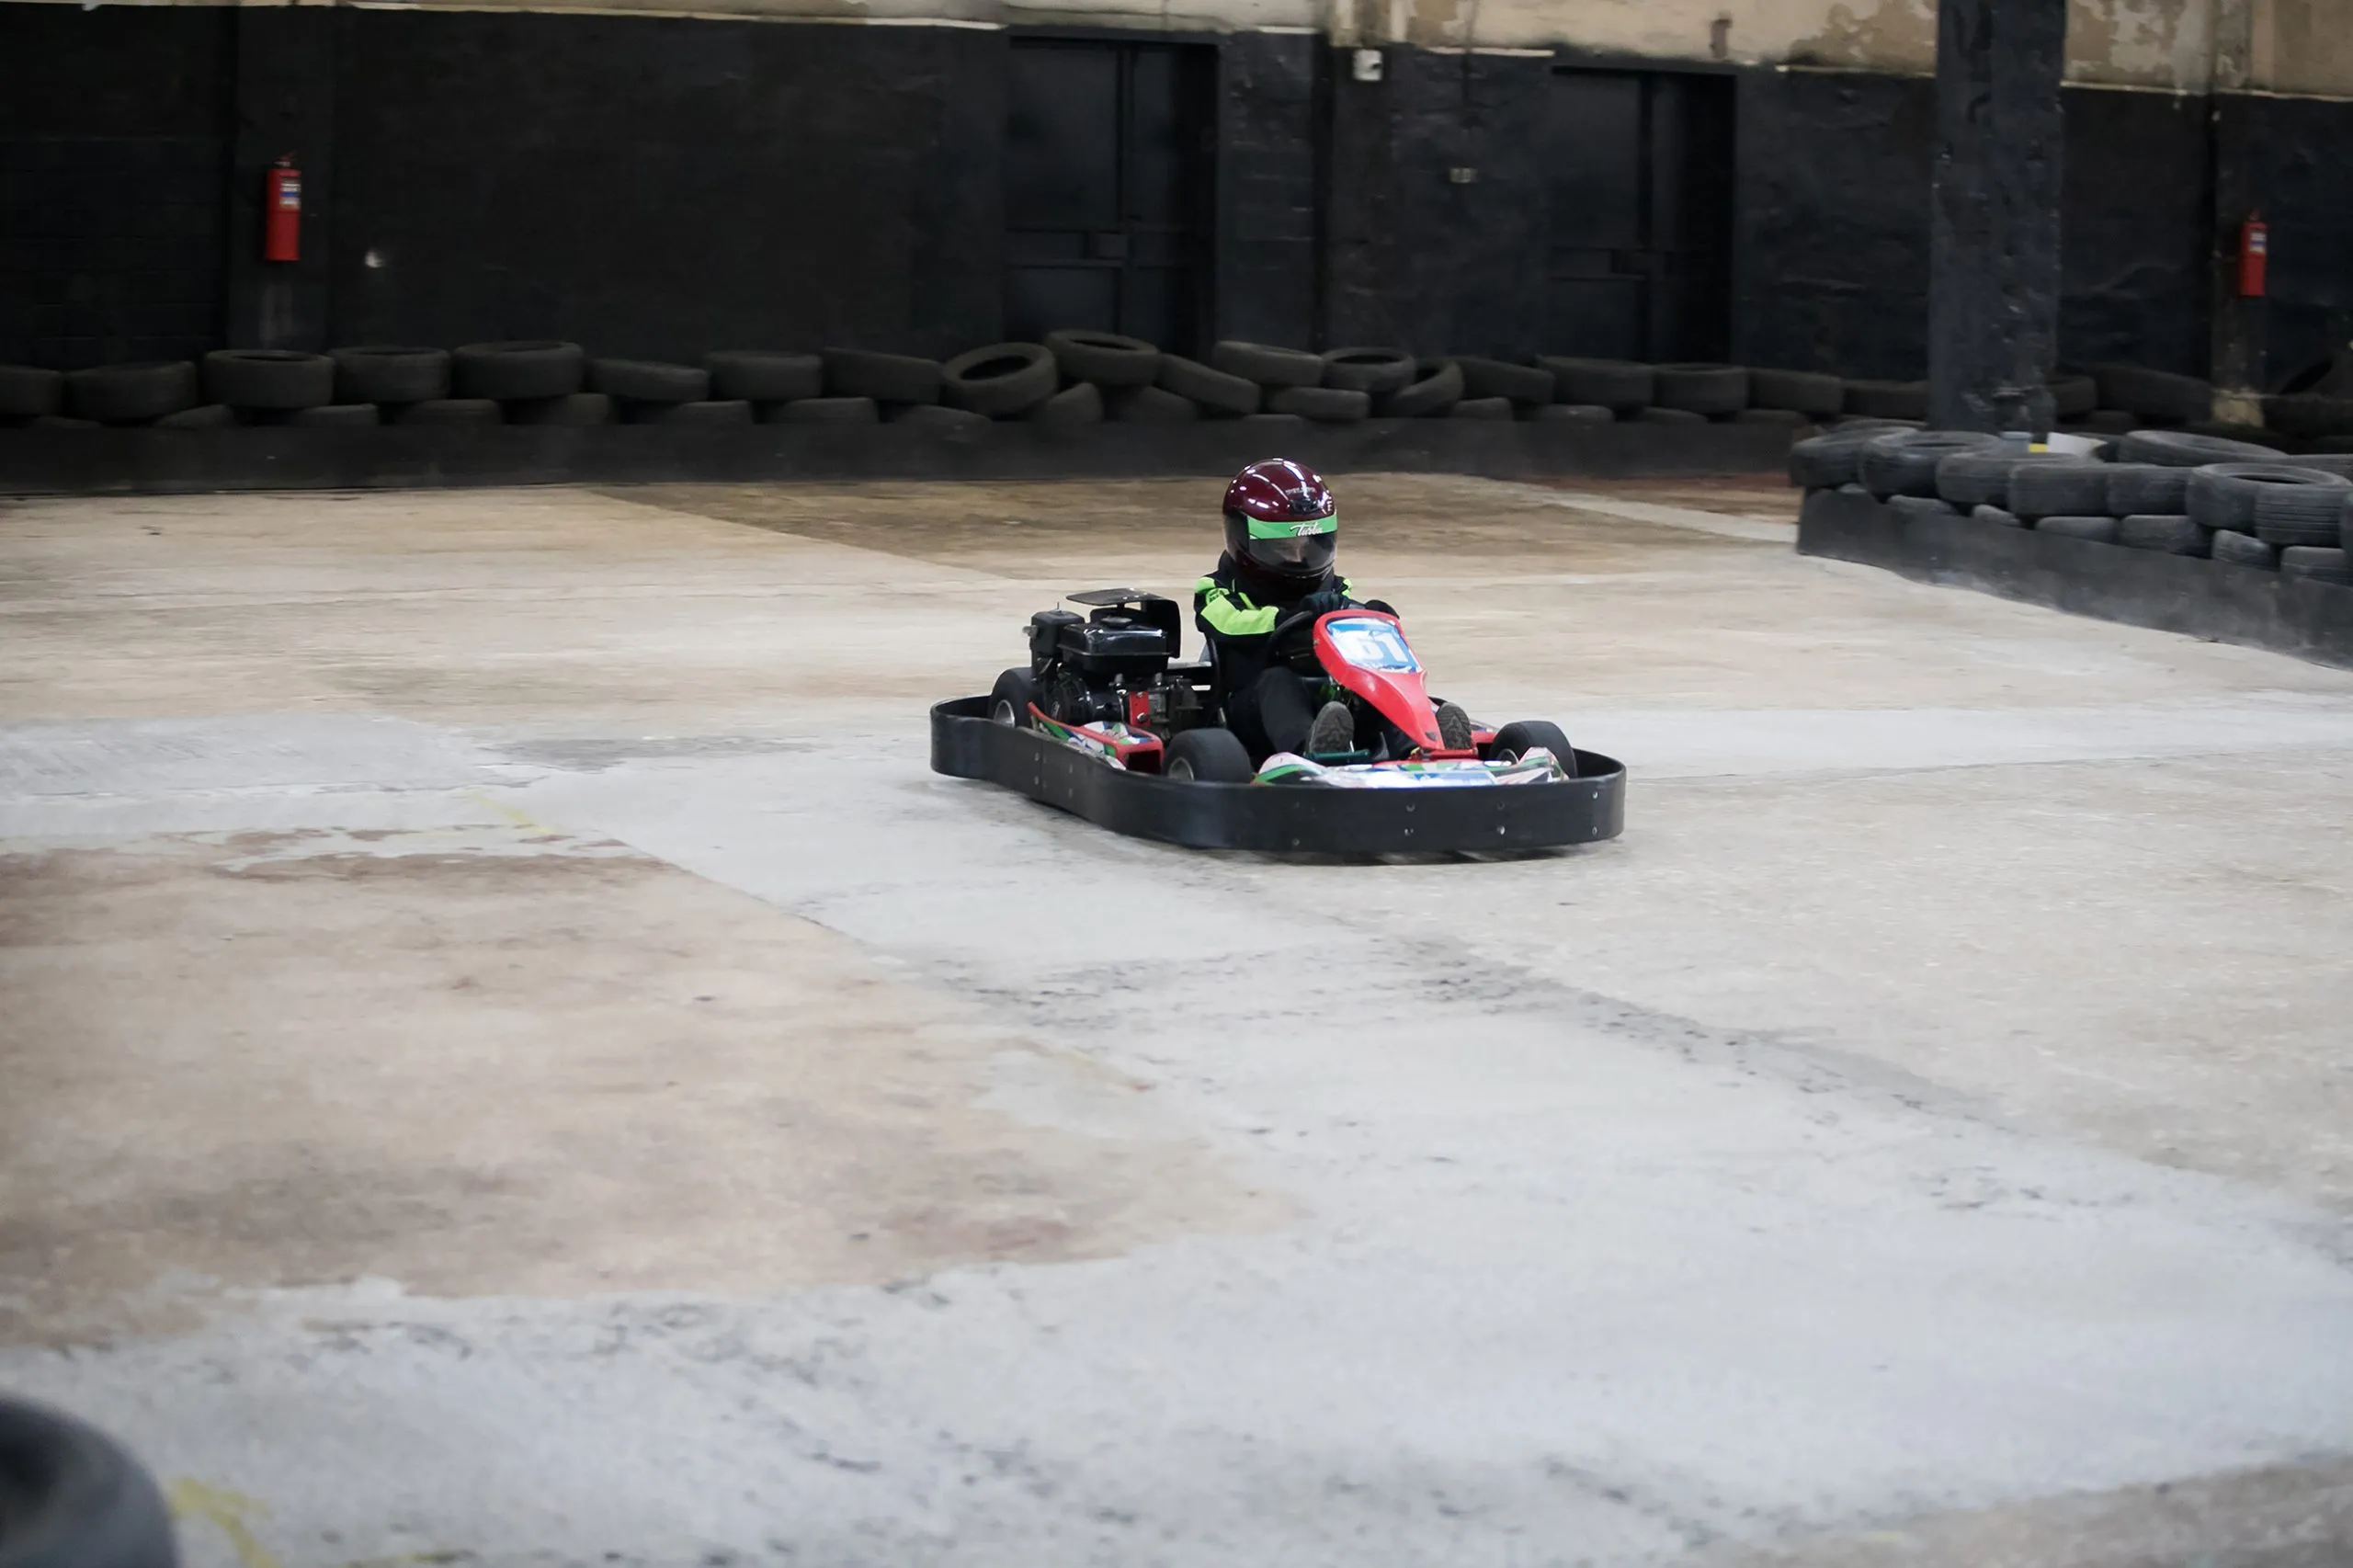 Karting Meisterschaft. Fahrer in Karts mit Helm und Rennanzug nehmen an einem Kartrennen teil. Karting zeigen. Kinder, Erwachsene Rennfahrer karting.